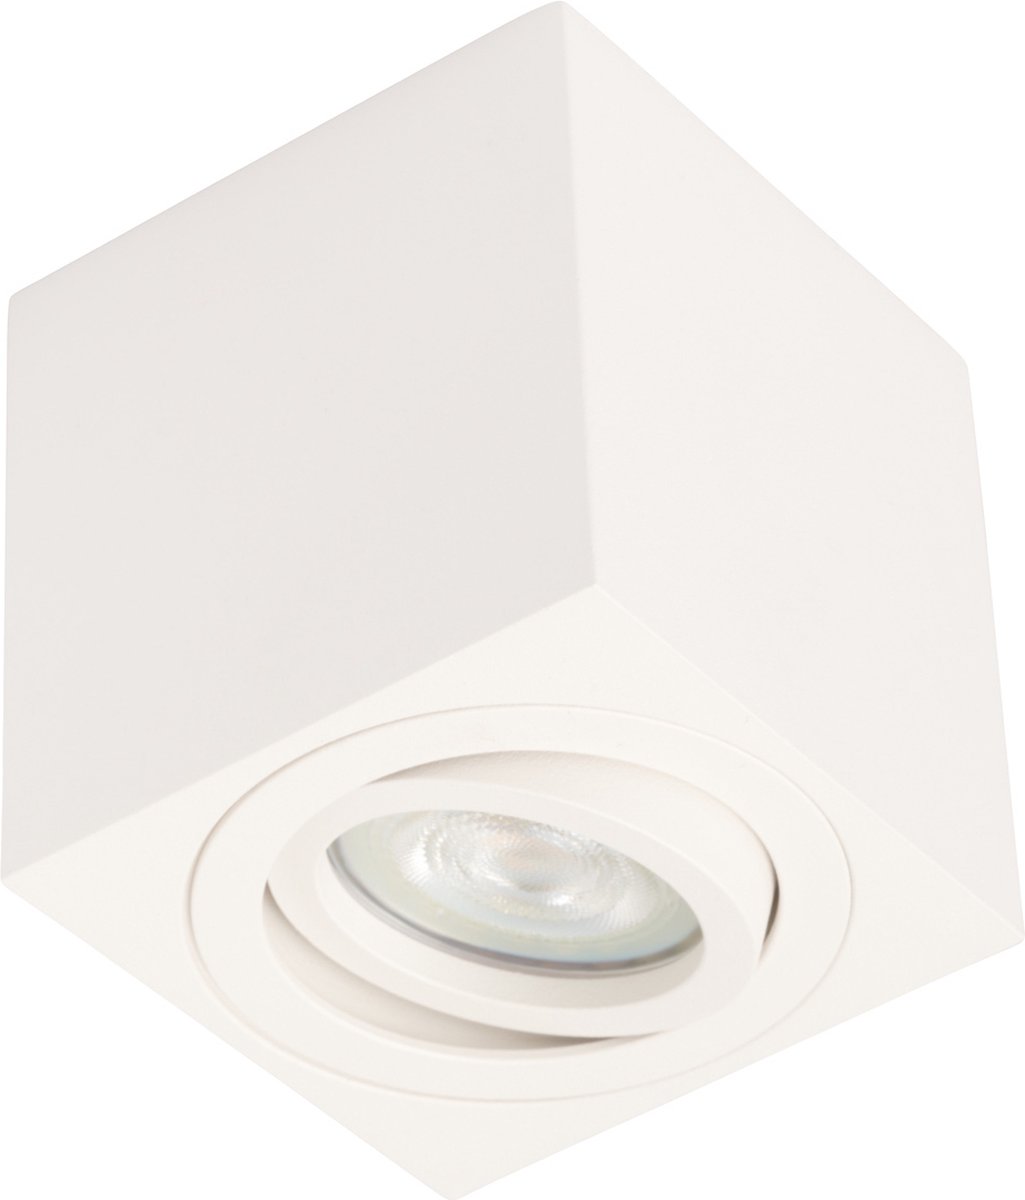 Ledmatters - Opbouwspot Wit - Dimbaar - 4 watt - 345 Lumen - 3000 Kelvin - Wit licht - Lichthoek Verstelbaar - IP44 Badkamerverlichting